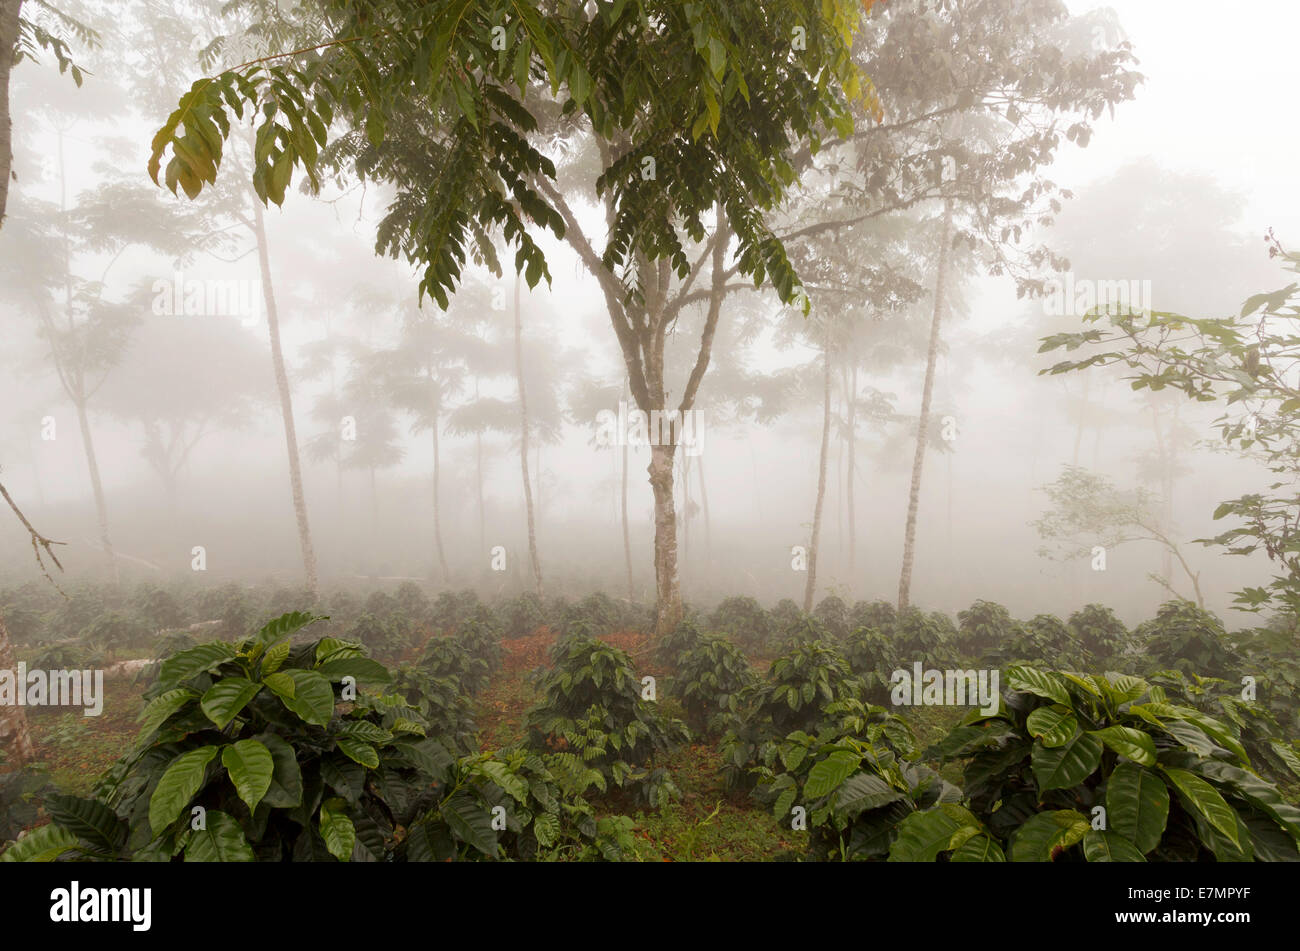 Kaffee-Sträucher in eine Schatten-grown Bio-Kaffee-Plantage an den westlichen Hängen der Anden in Ecuador an einem nebligen Tag. Stockfoto